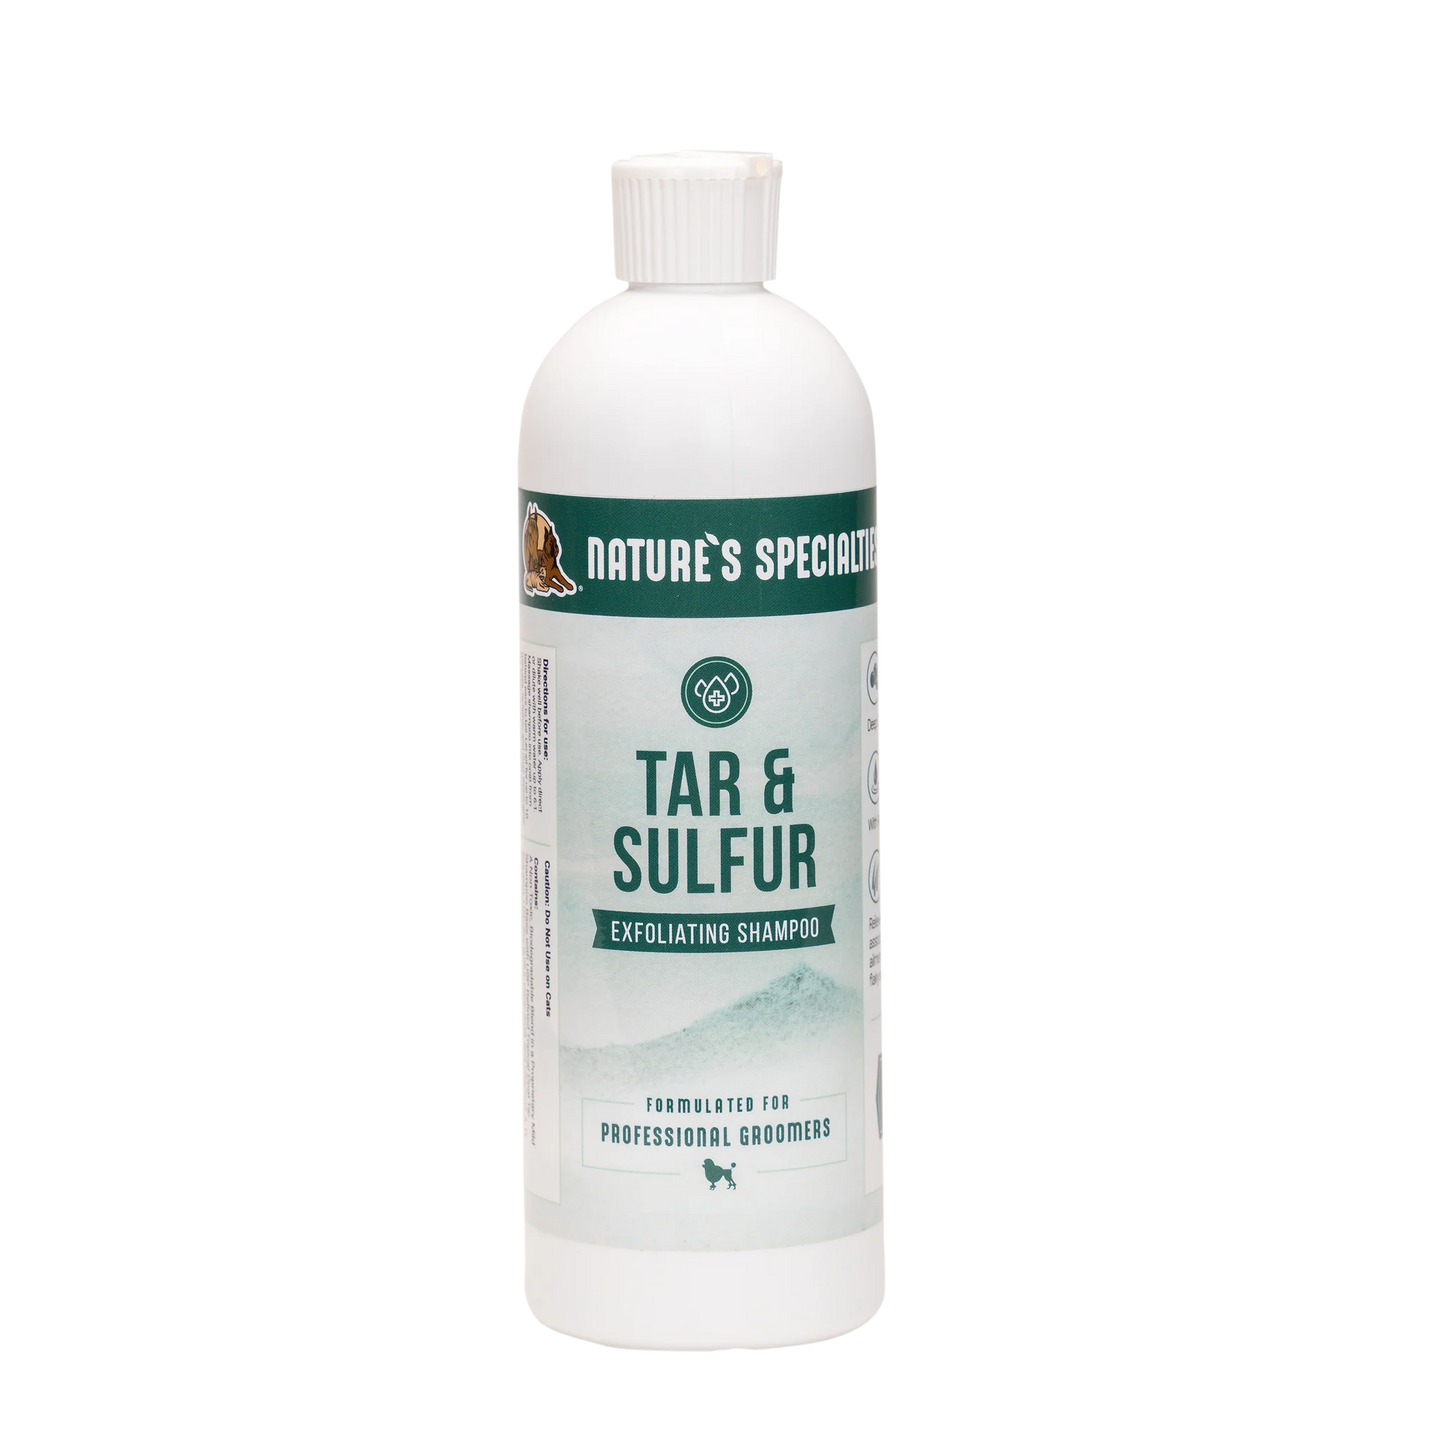 Nature's Specialties Tar & Sulfer 16-oz, Dog Shampoo